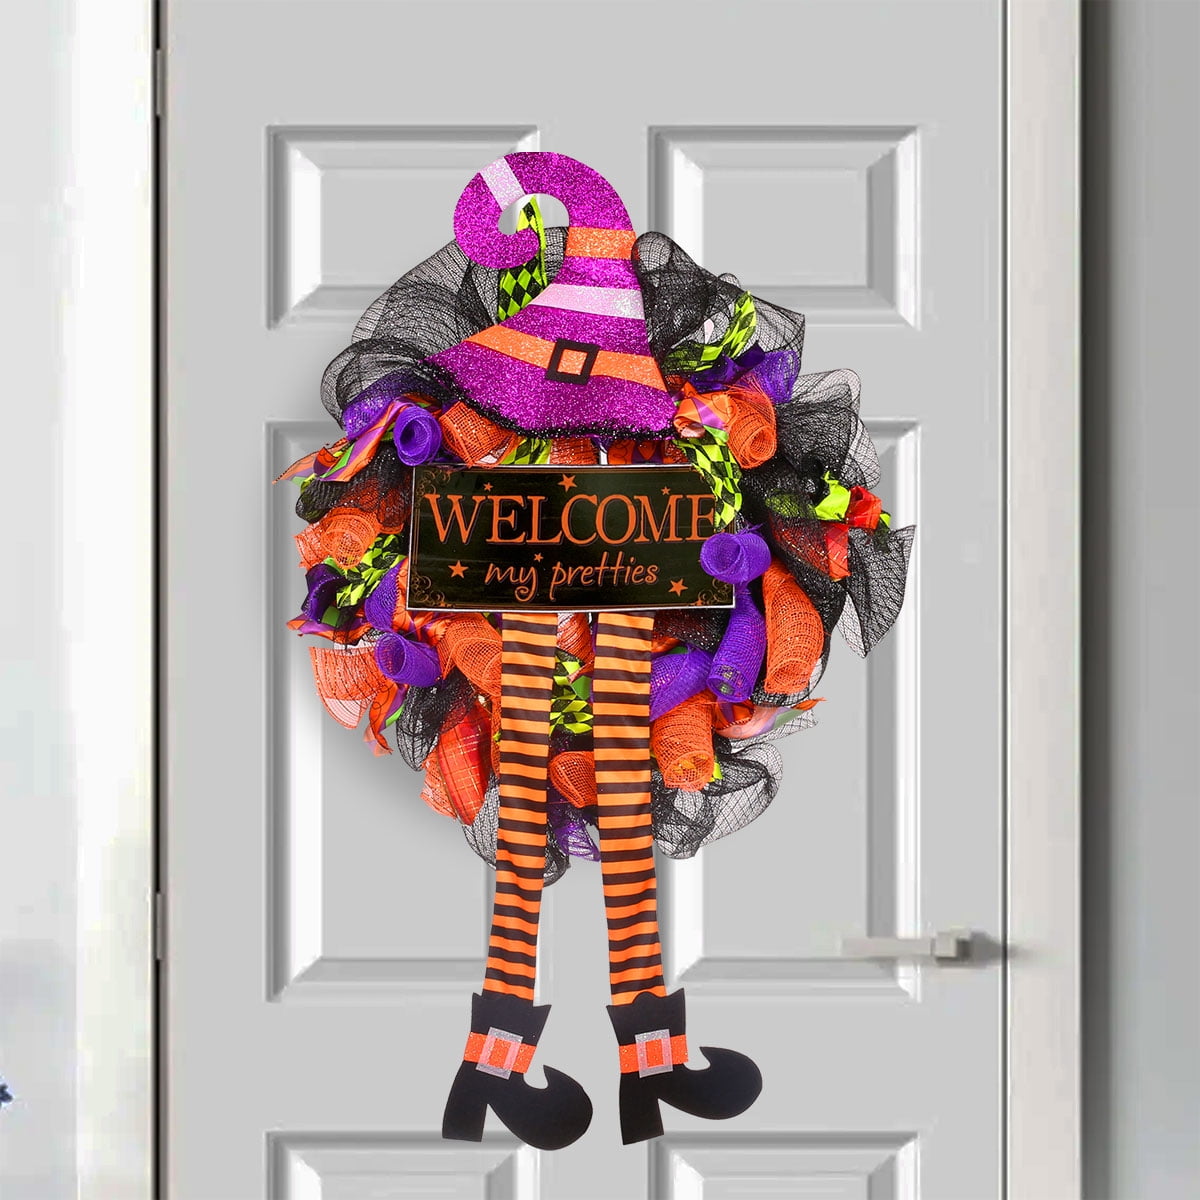 Welcome My Pretties Halloween Deco Mesh Door or Wall Wreath New 24”x 24”x 6” 